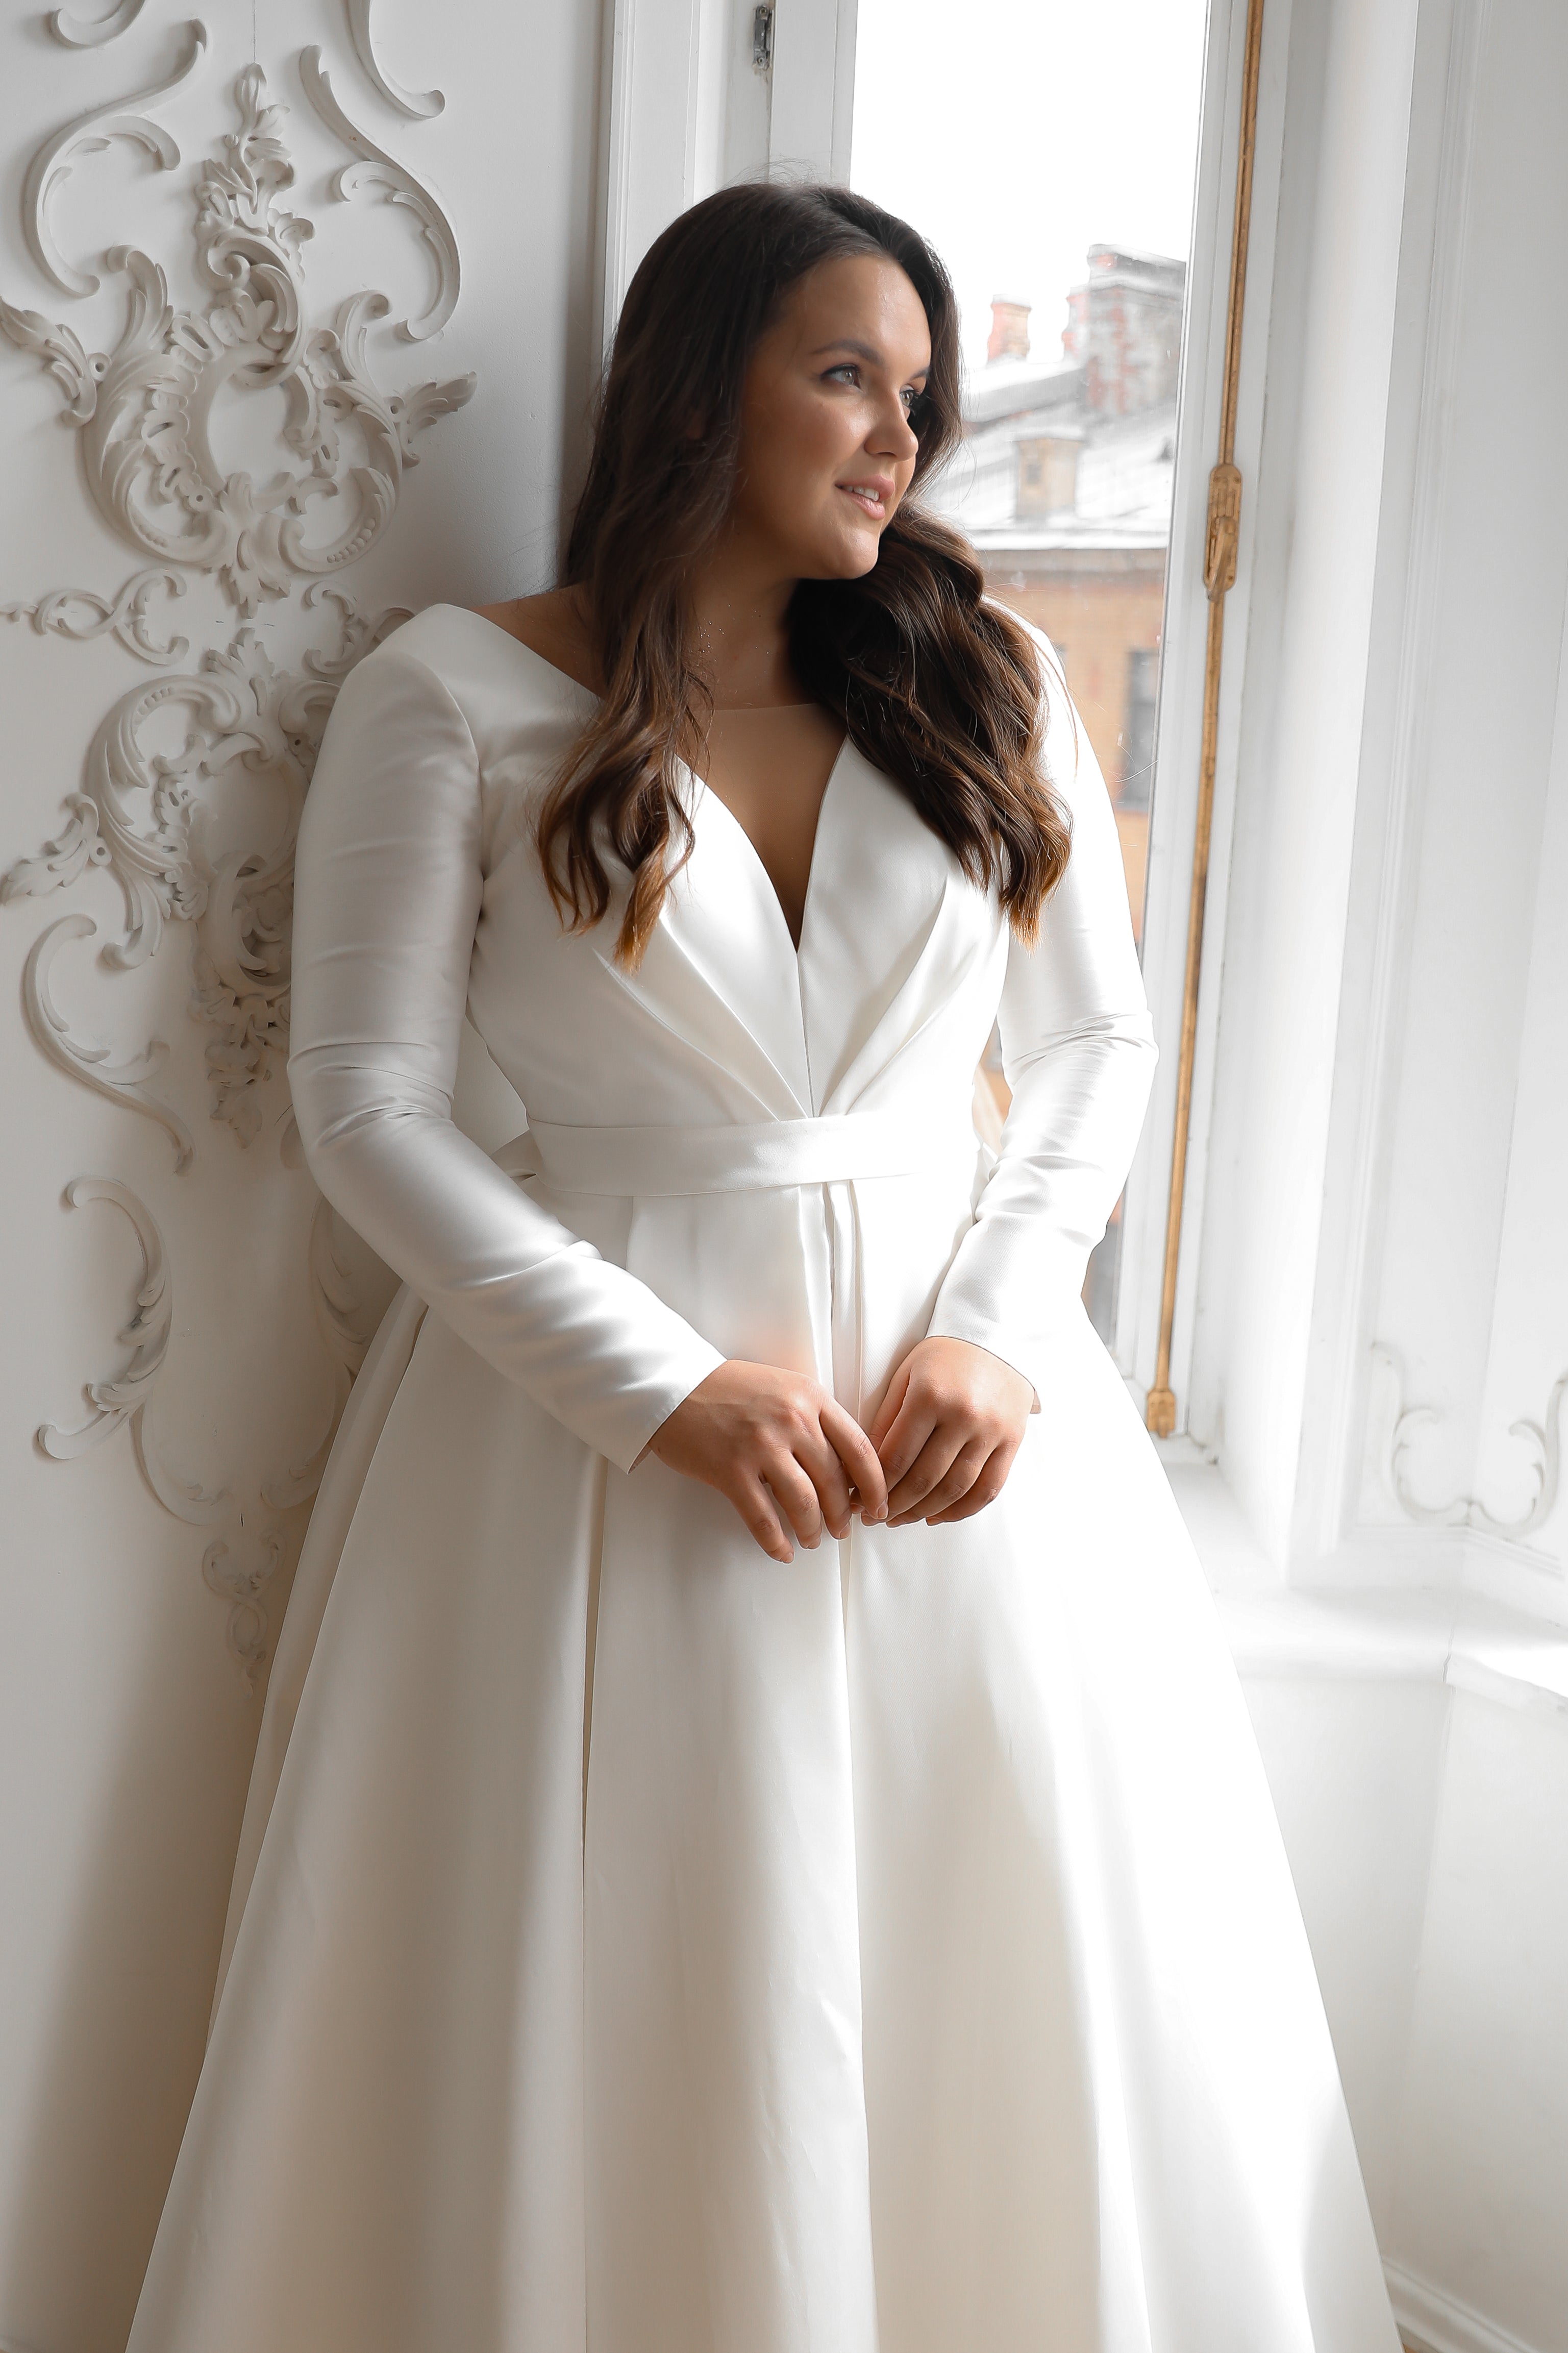 Wedding Dresses Under $1000  Online Bridal Shop – Olivia Bottega